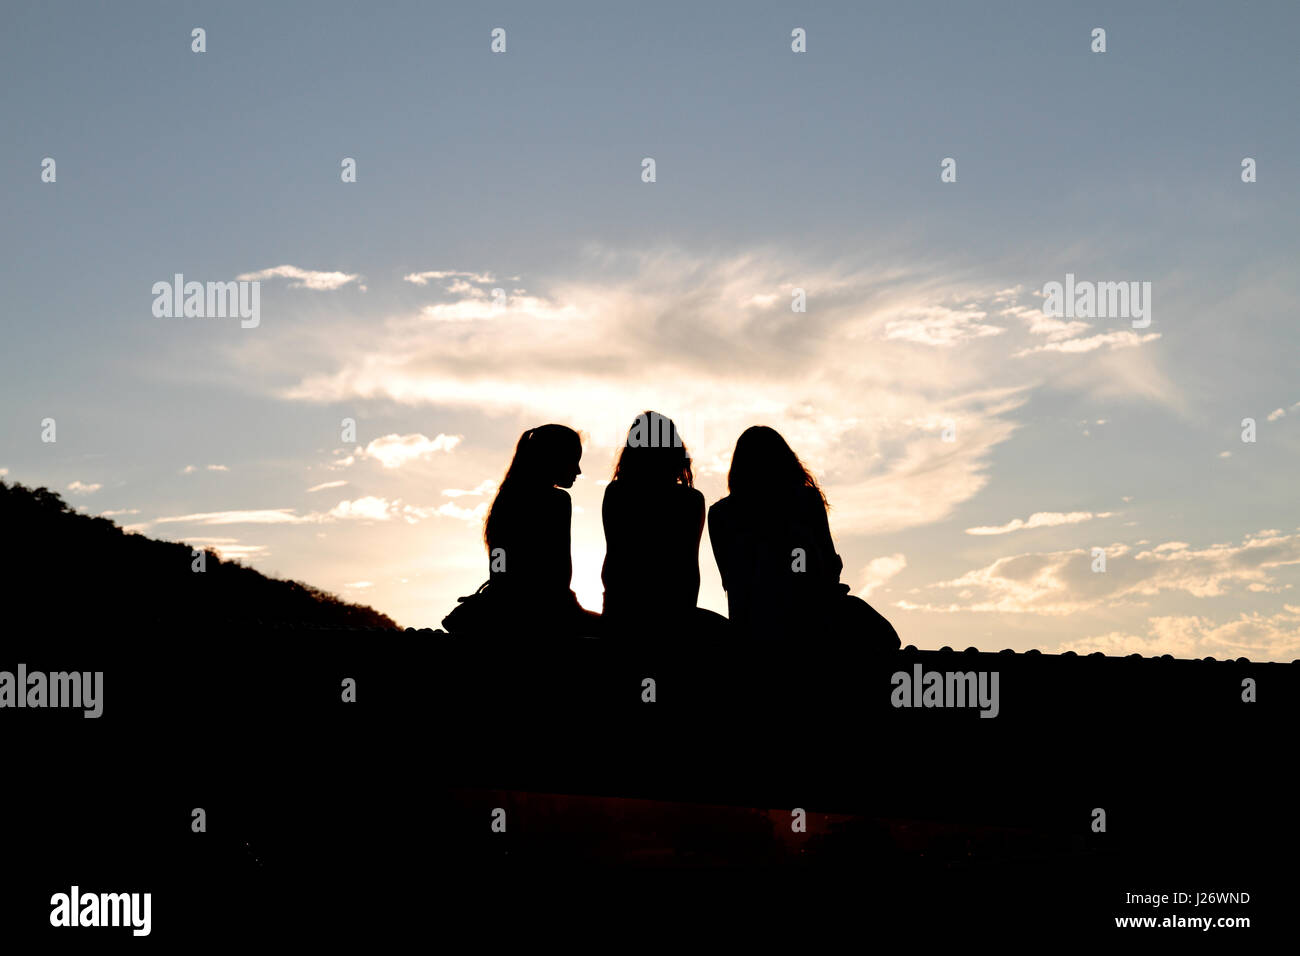 Silhouette von drei jungen Frauen gegen einen hellen blauen Sommerhimmel in Budapest, Ungarn. Stockfoto